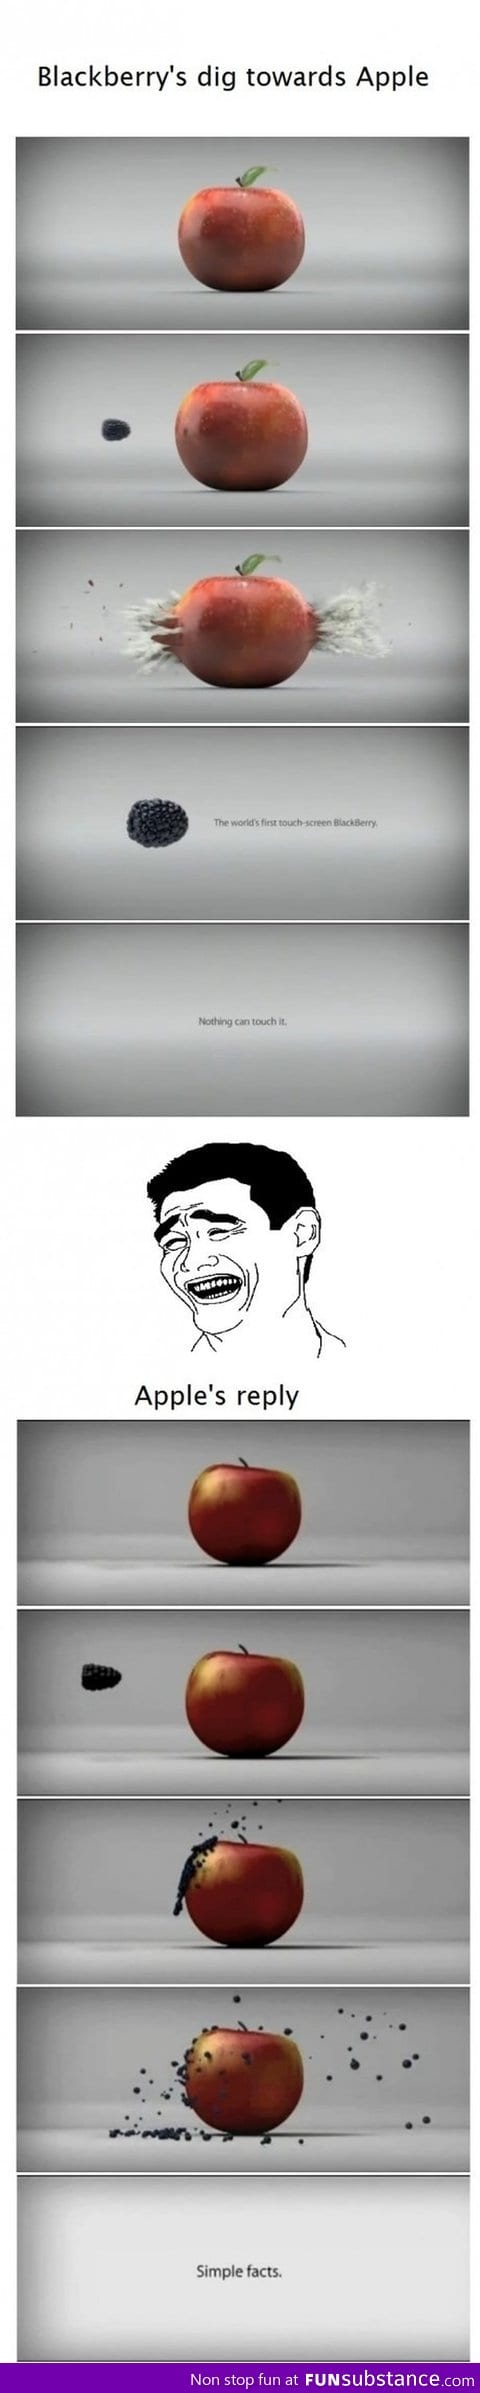 Blackberry vs Apple